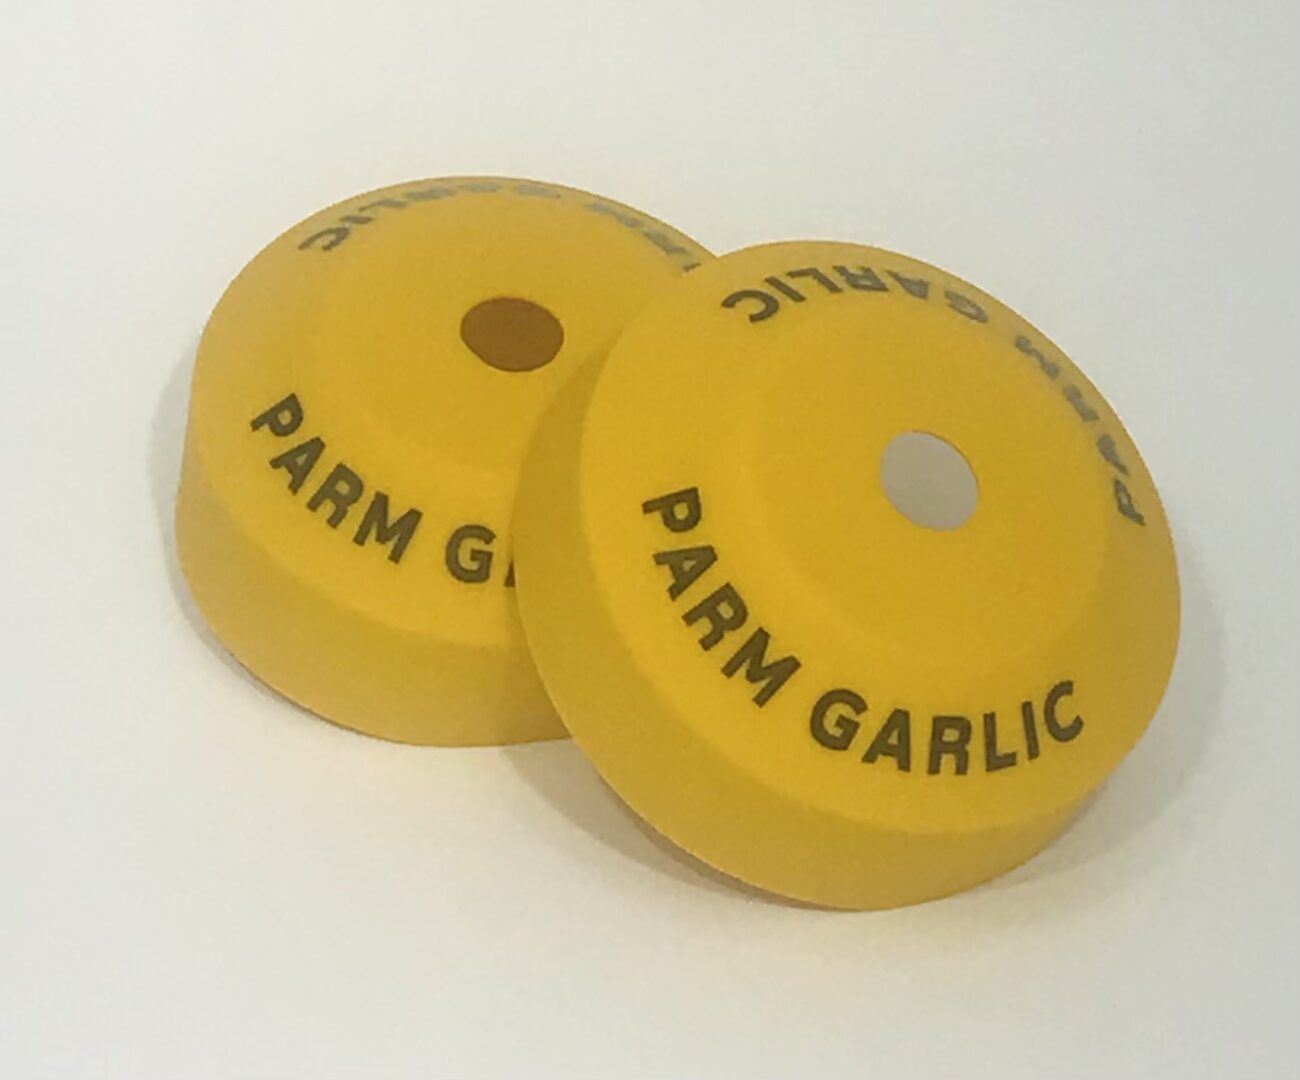 Parm Garlic